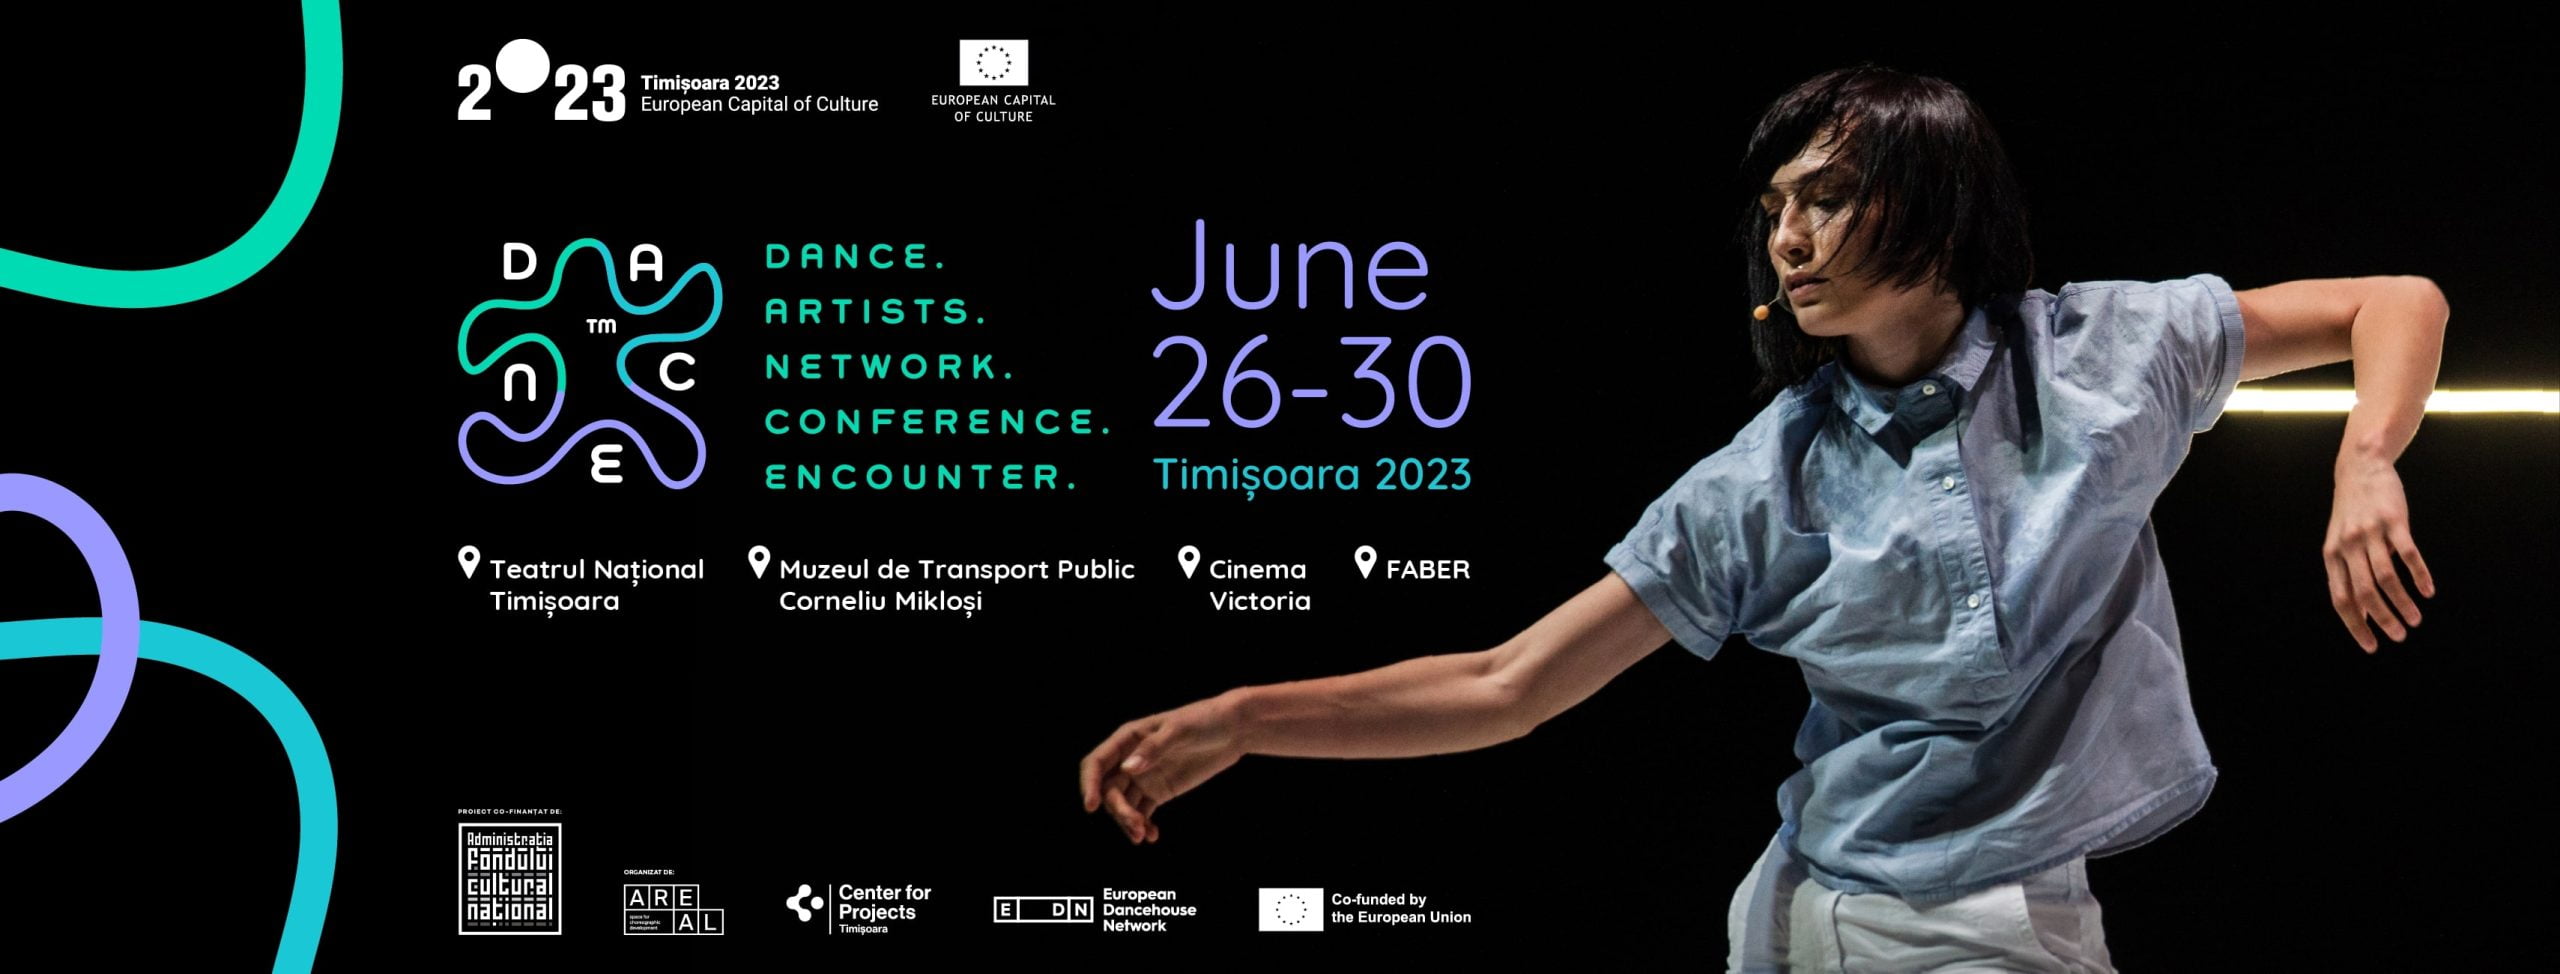 D.A.N.C.E™ Dance. Artists. Network. Conference. Encounter pune Timișoara pe harta europeană a dansului contemporan